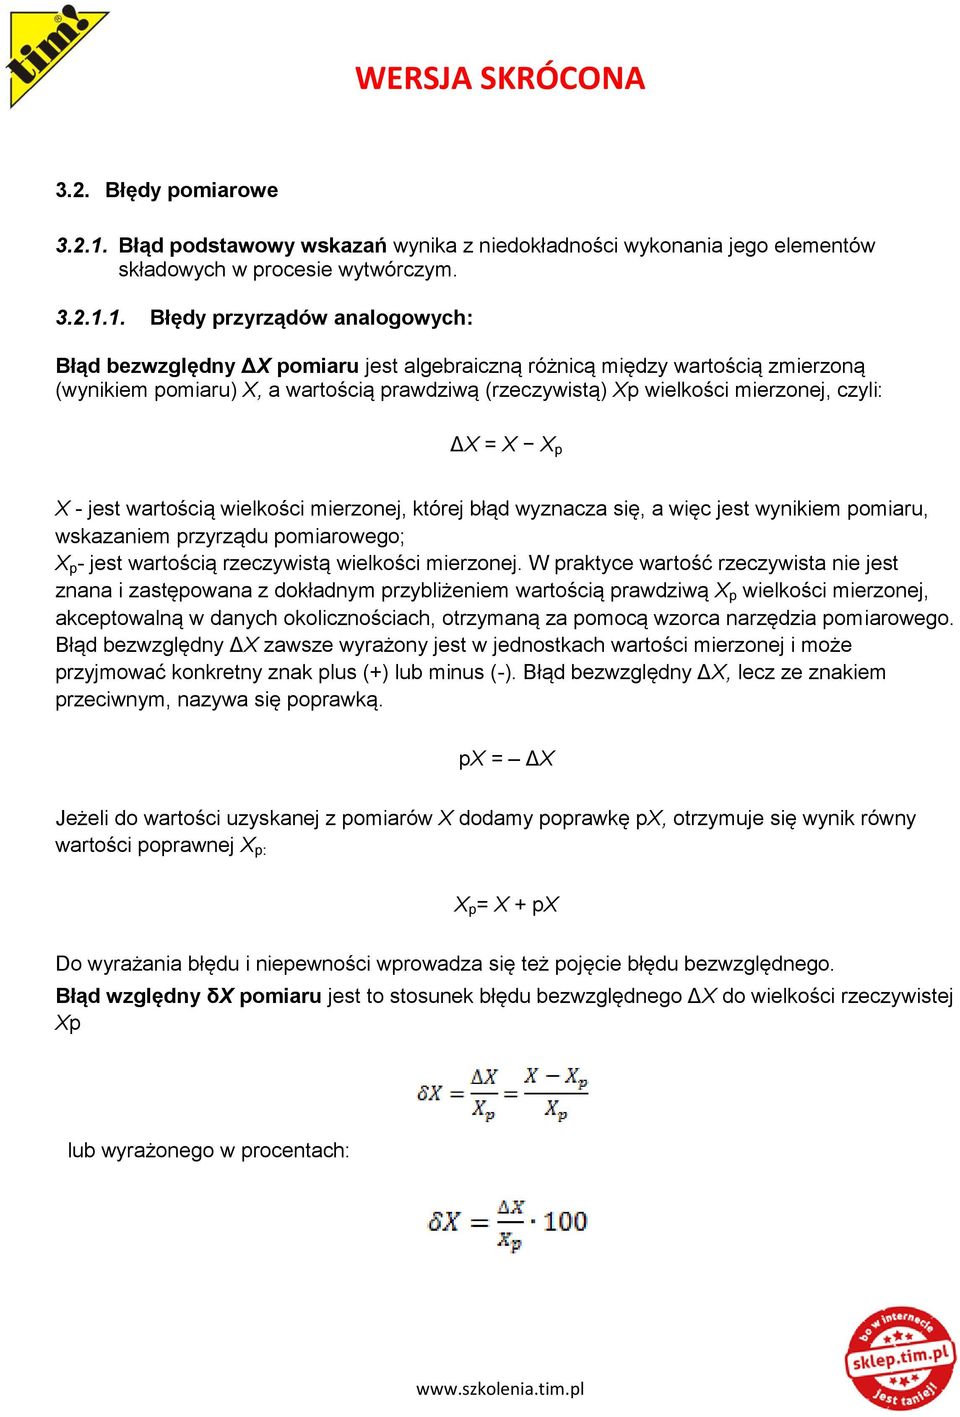 1. Błędy przyrządów analogowych: Błąd bezwzględny ΔX pomiaru jest algebraiczną różnicą między wartością zmierzoną (wynikiem pomiaru) X, a wartością prawdziwą (rzeczywistą) Xp wielkości mierzonej,